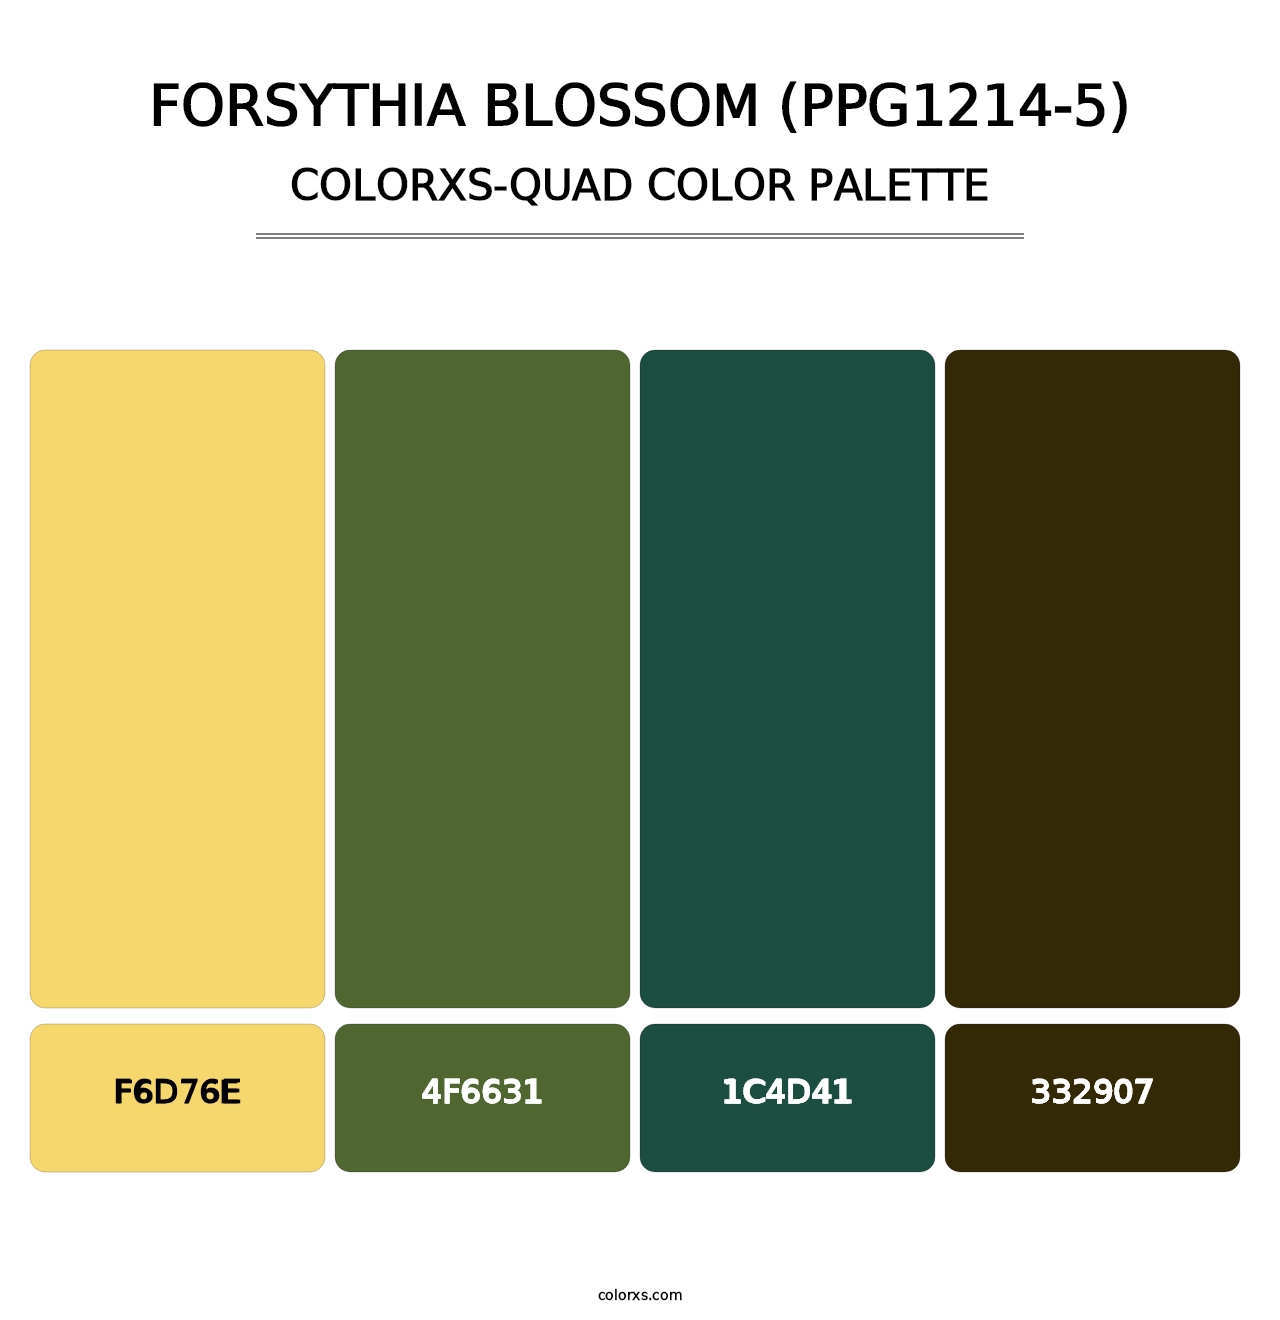 Forsythia Blossom (PPG1214-5) - Colorxs Quad Palette